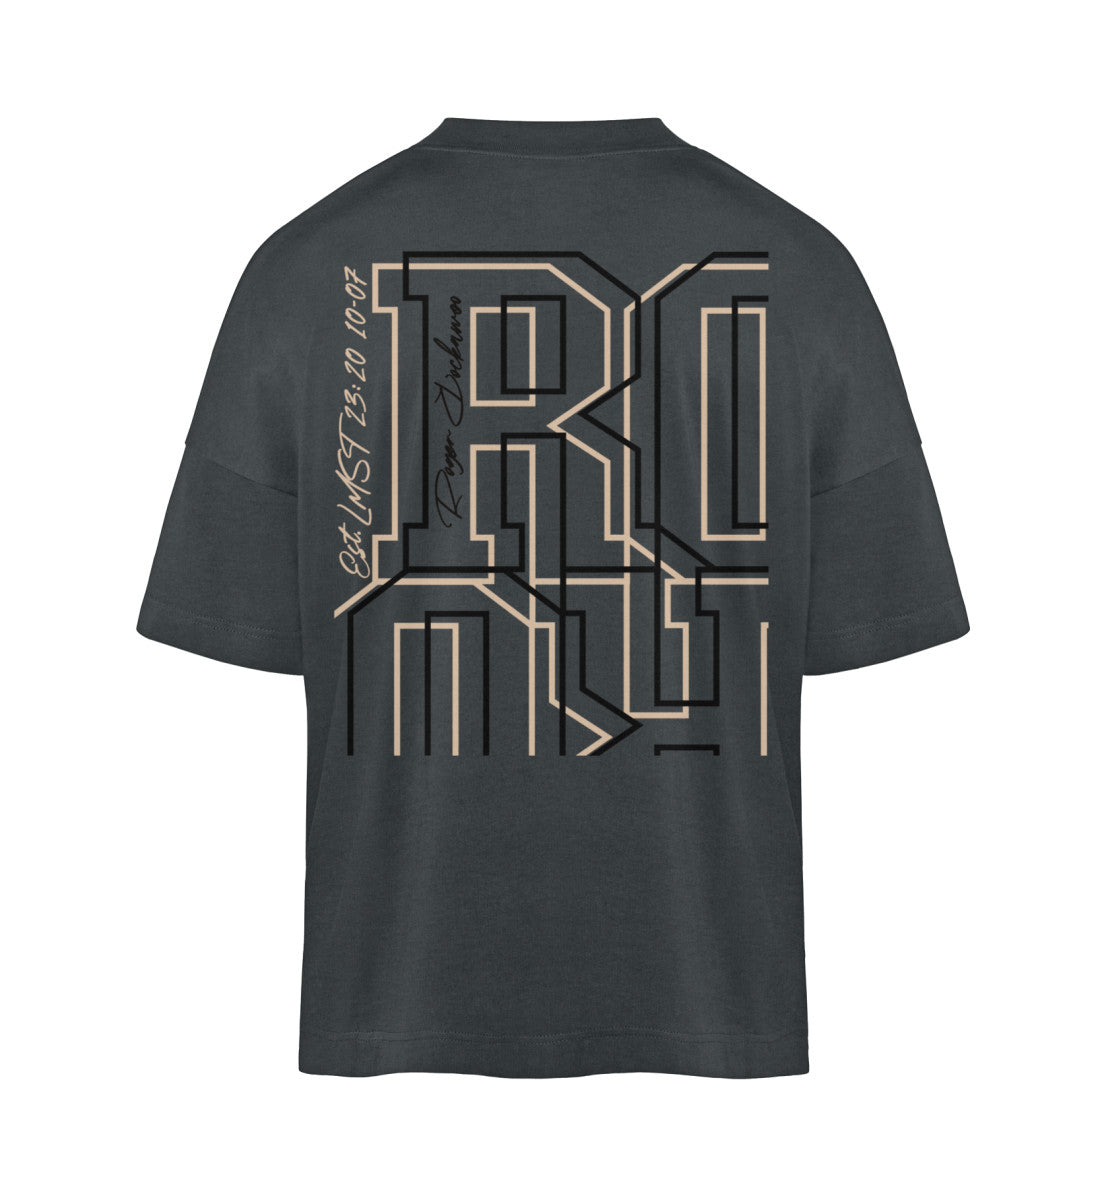 Schwarzes T-Shirt Unisex Oversize Fit für Frauen und Männer bedruckt mit dem Design der Roger Rockawoo Kollektion Schwer Laut